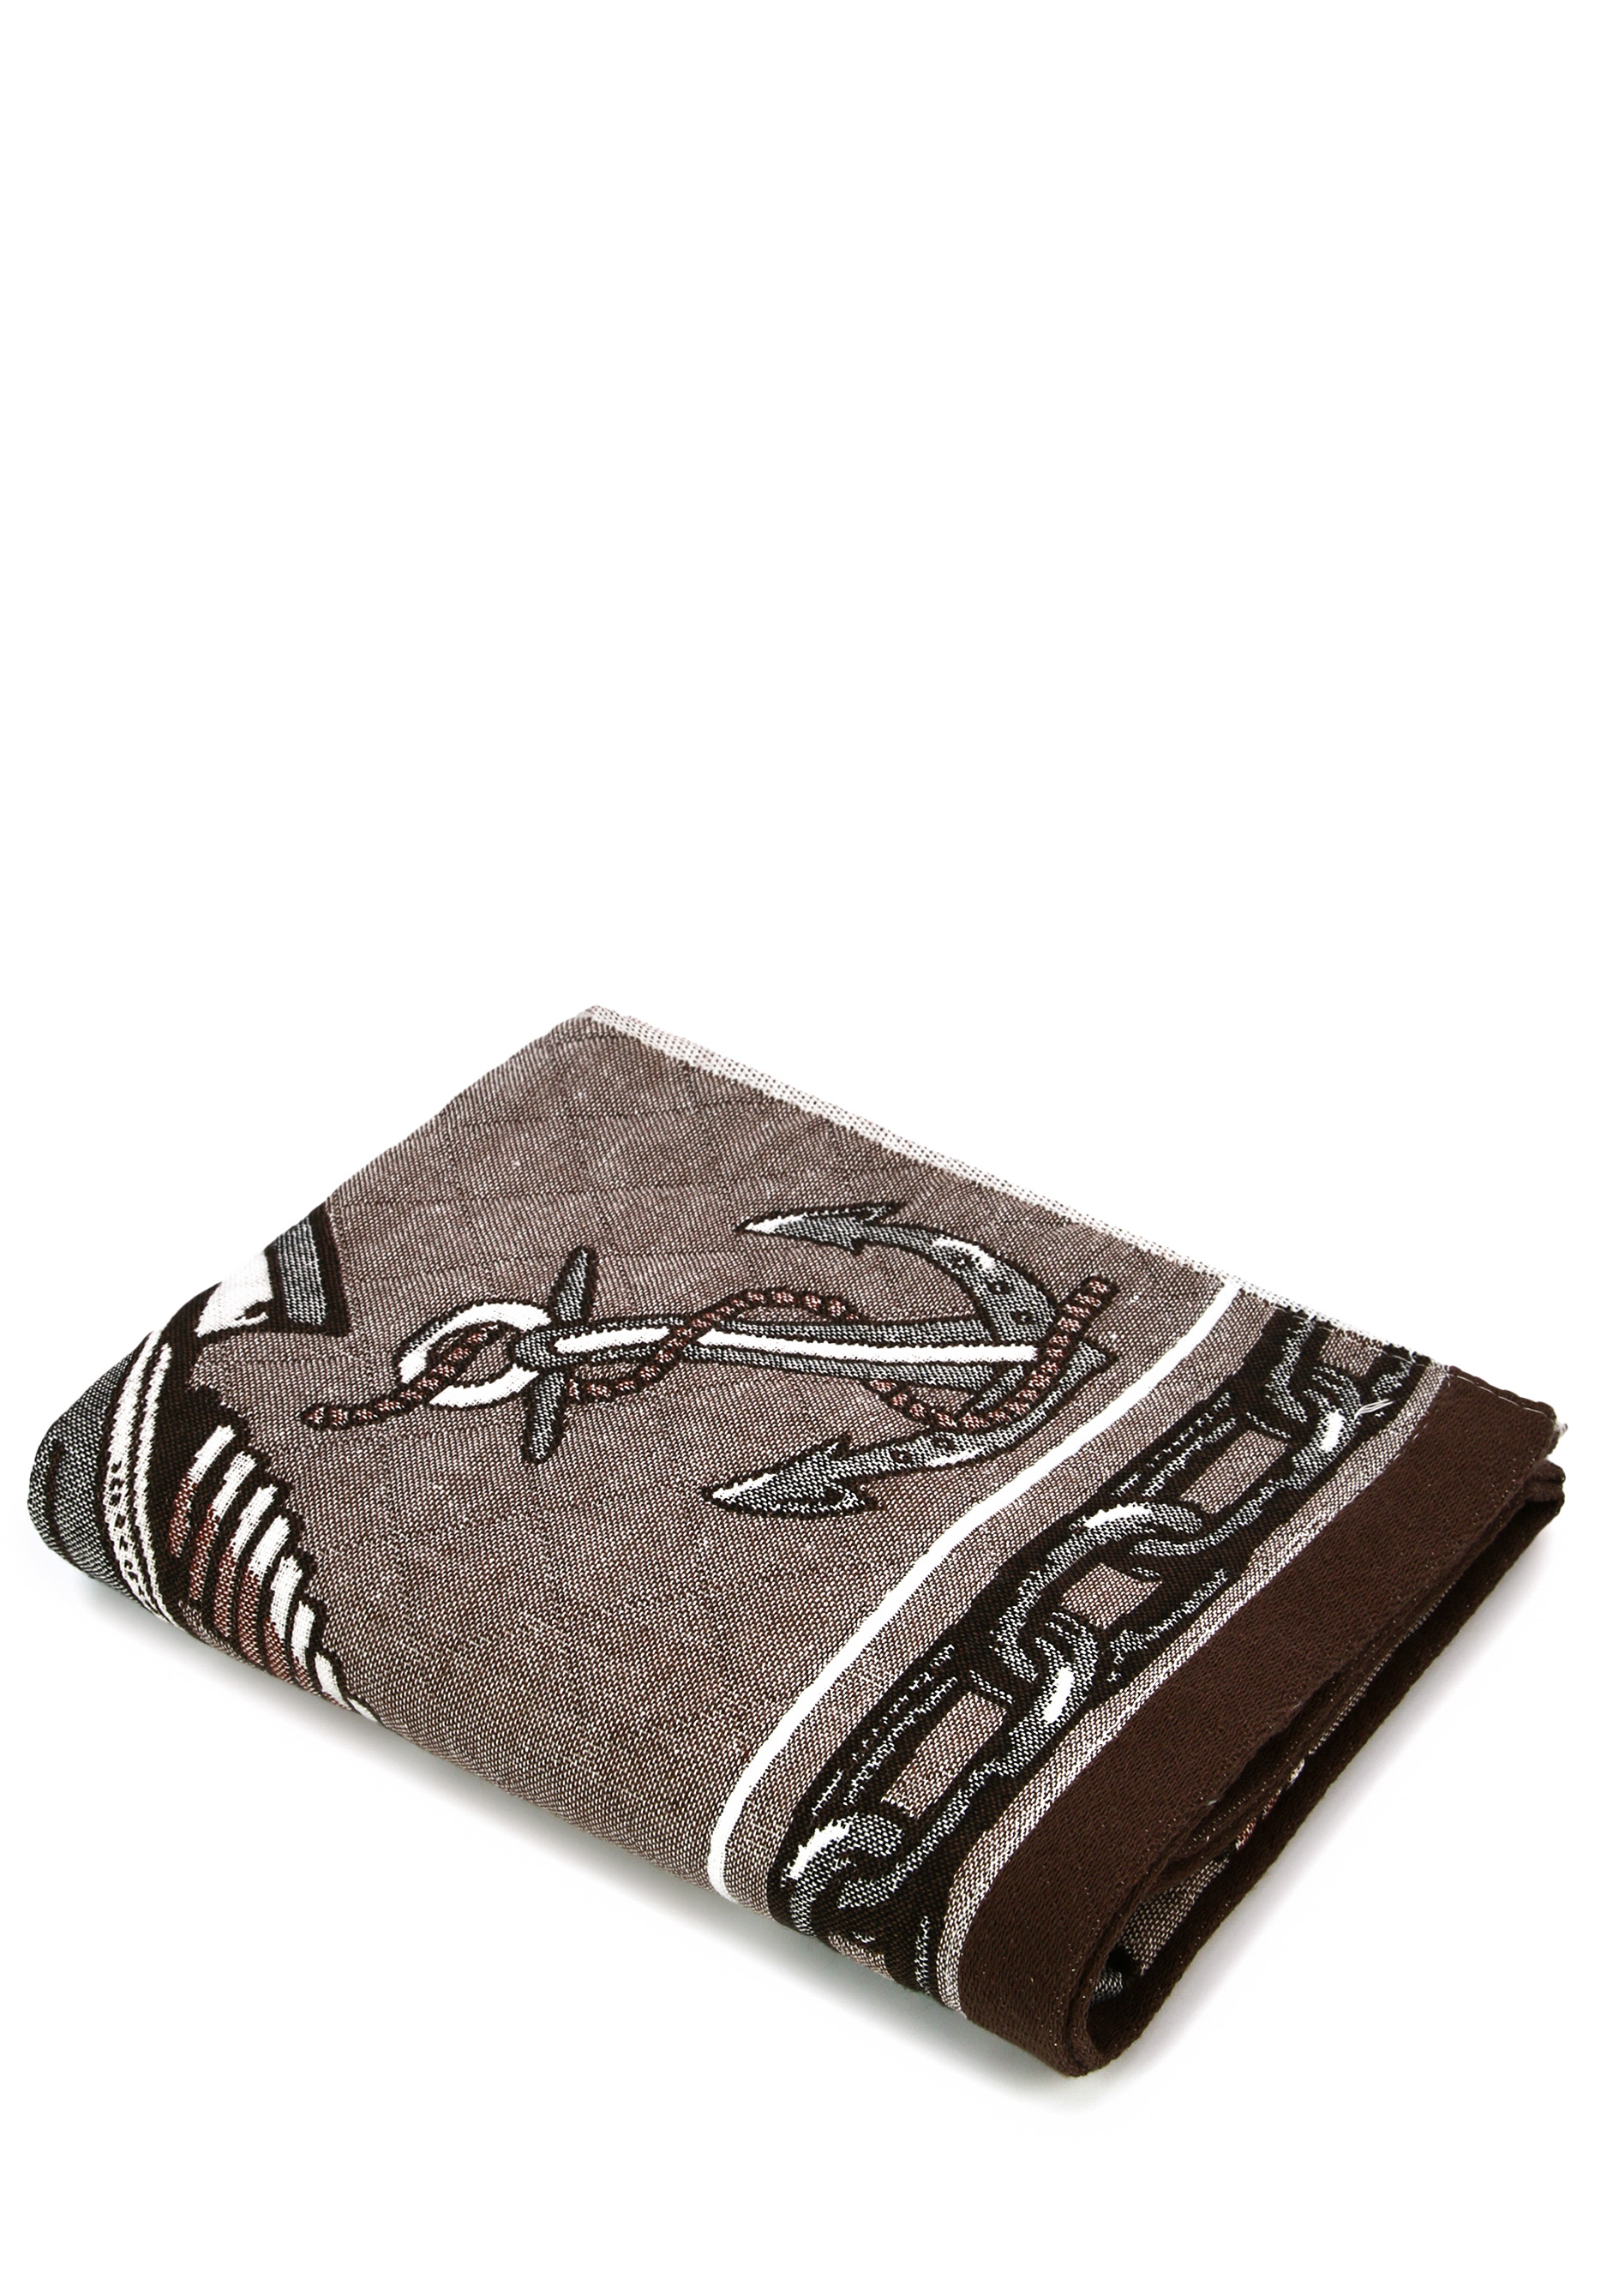 Полотенце стеганое "Реванш", 55*100 см, цвет коричневый, размер 55*100 - фото 2